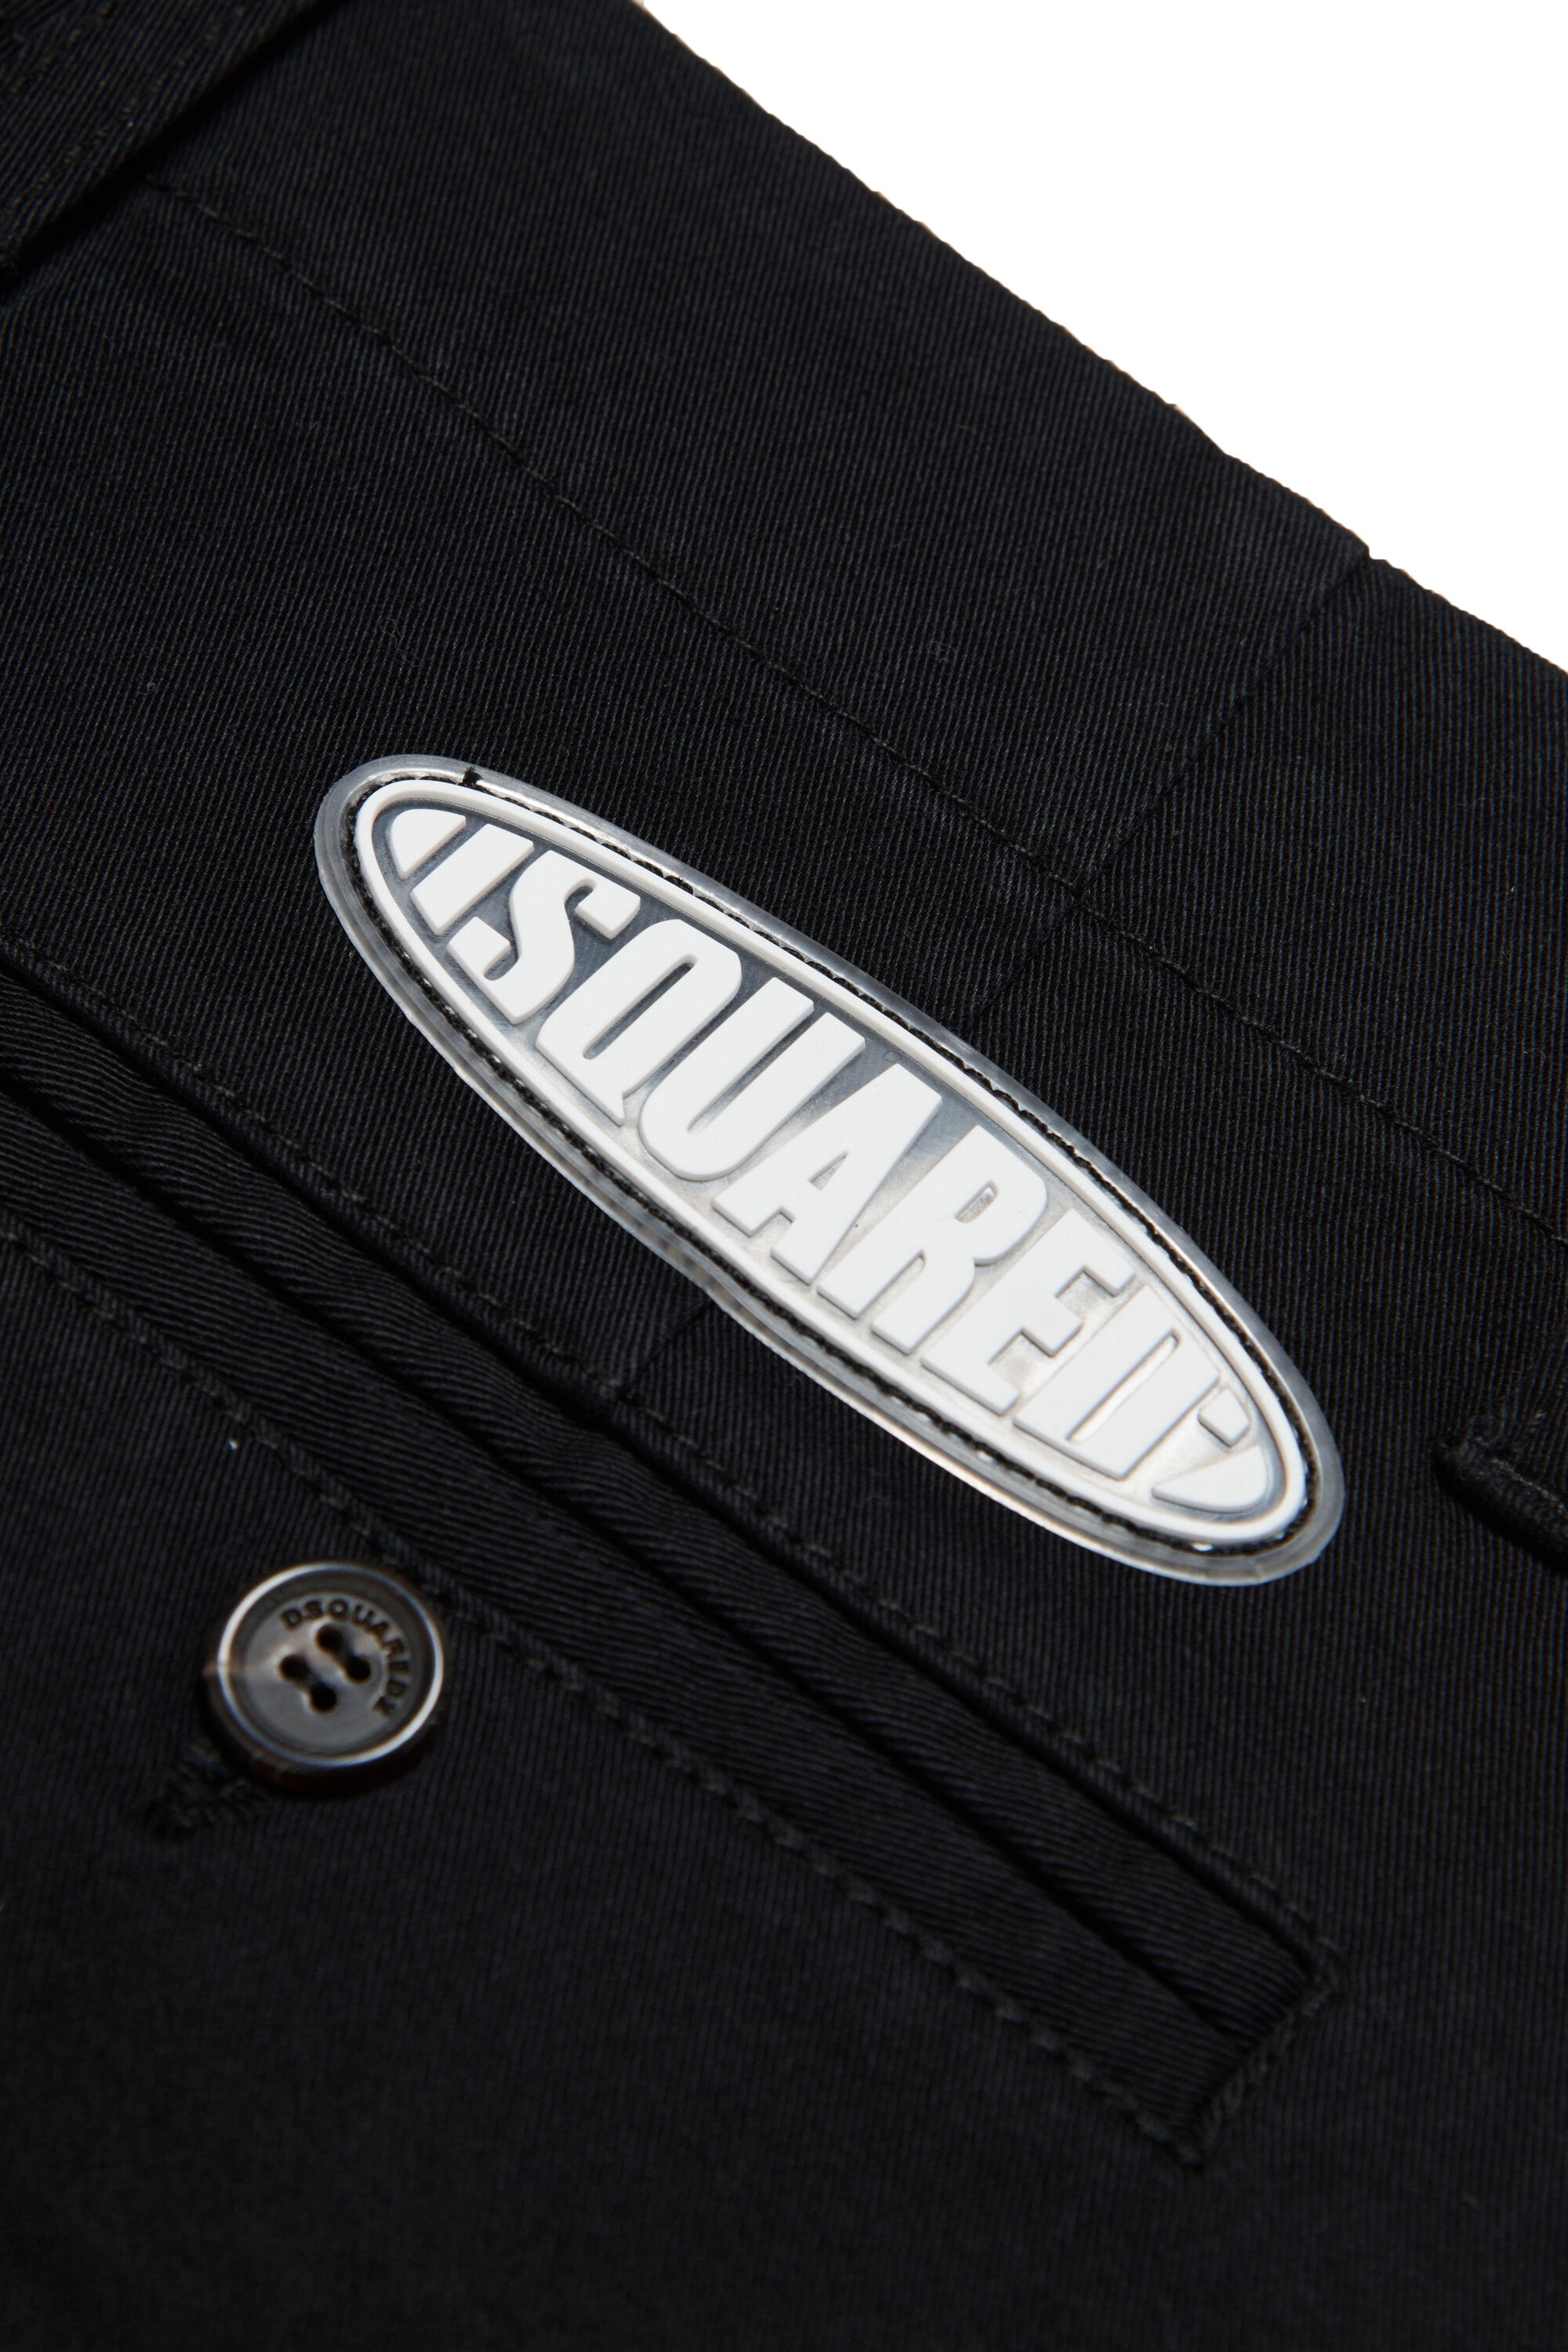 Pantalones cortos de gabardina y parche con logotipo Surf